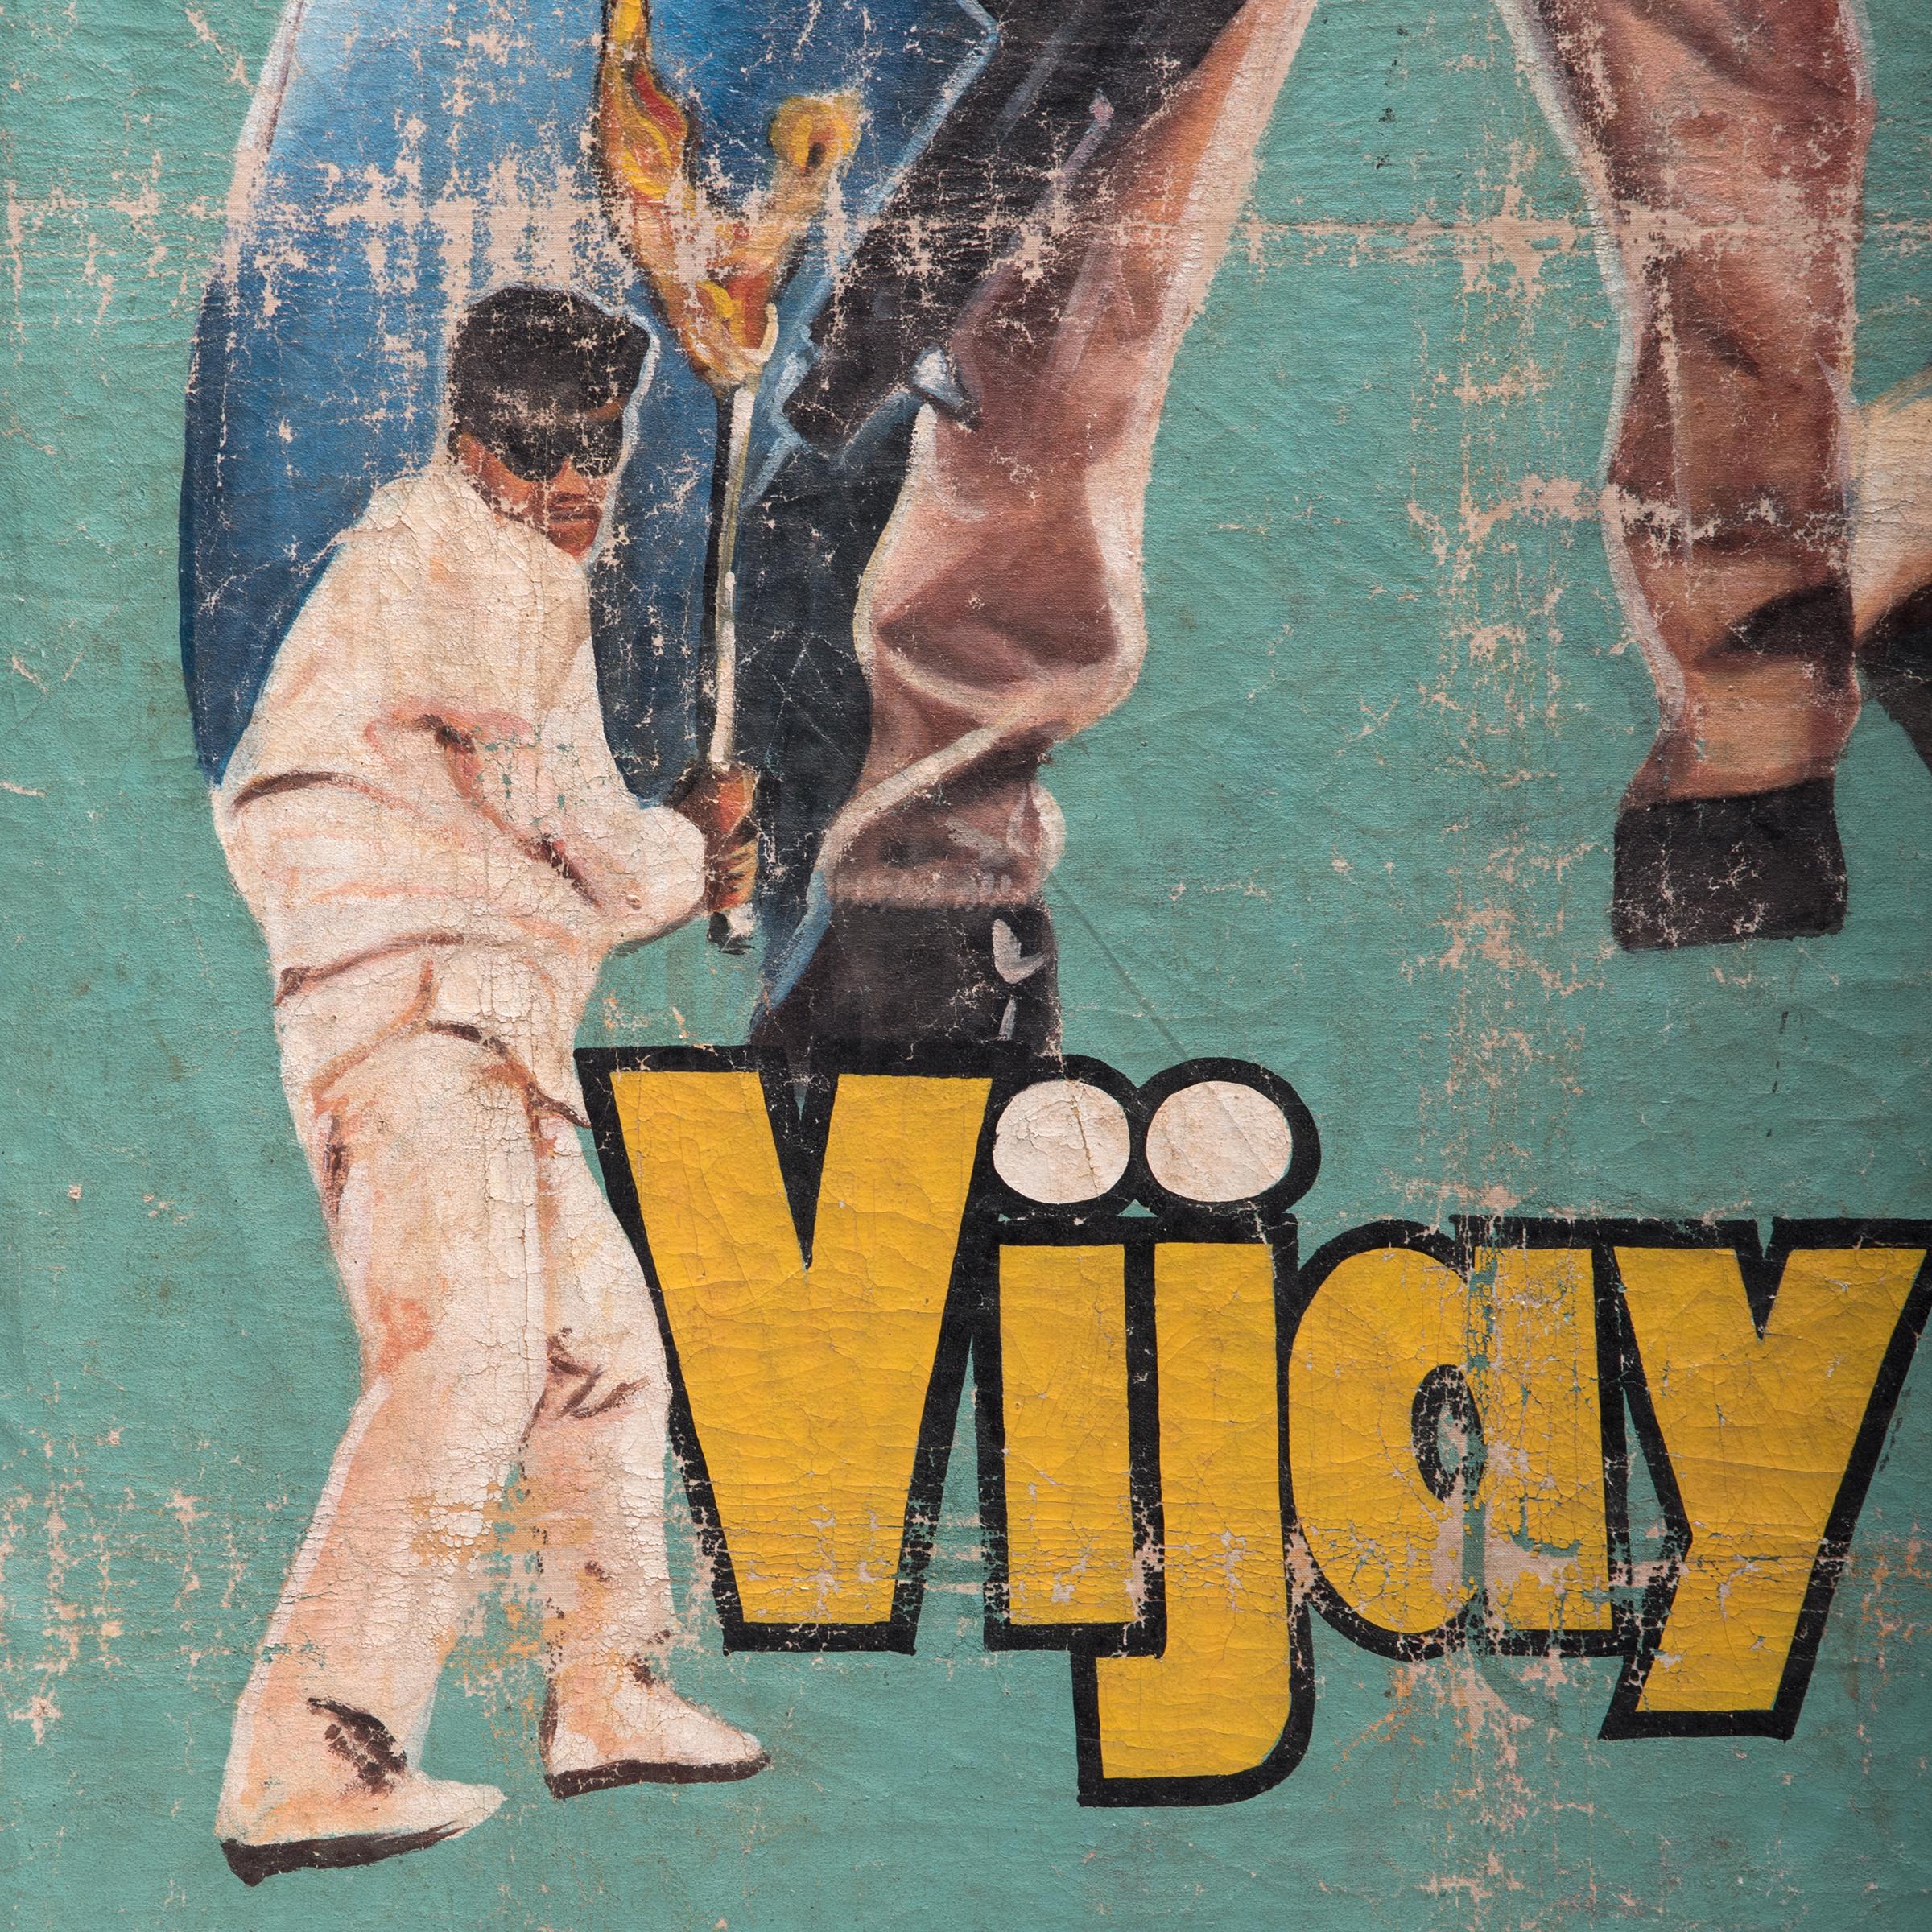 vijaypath movie images